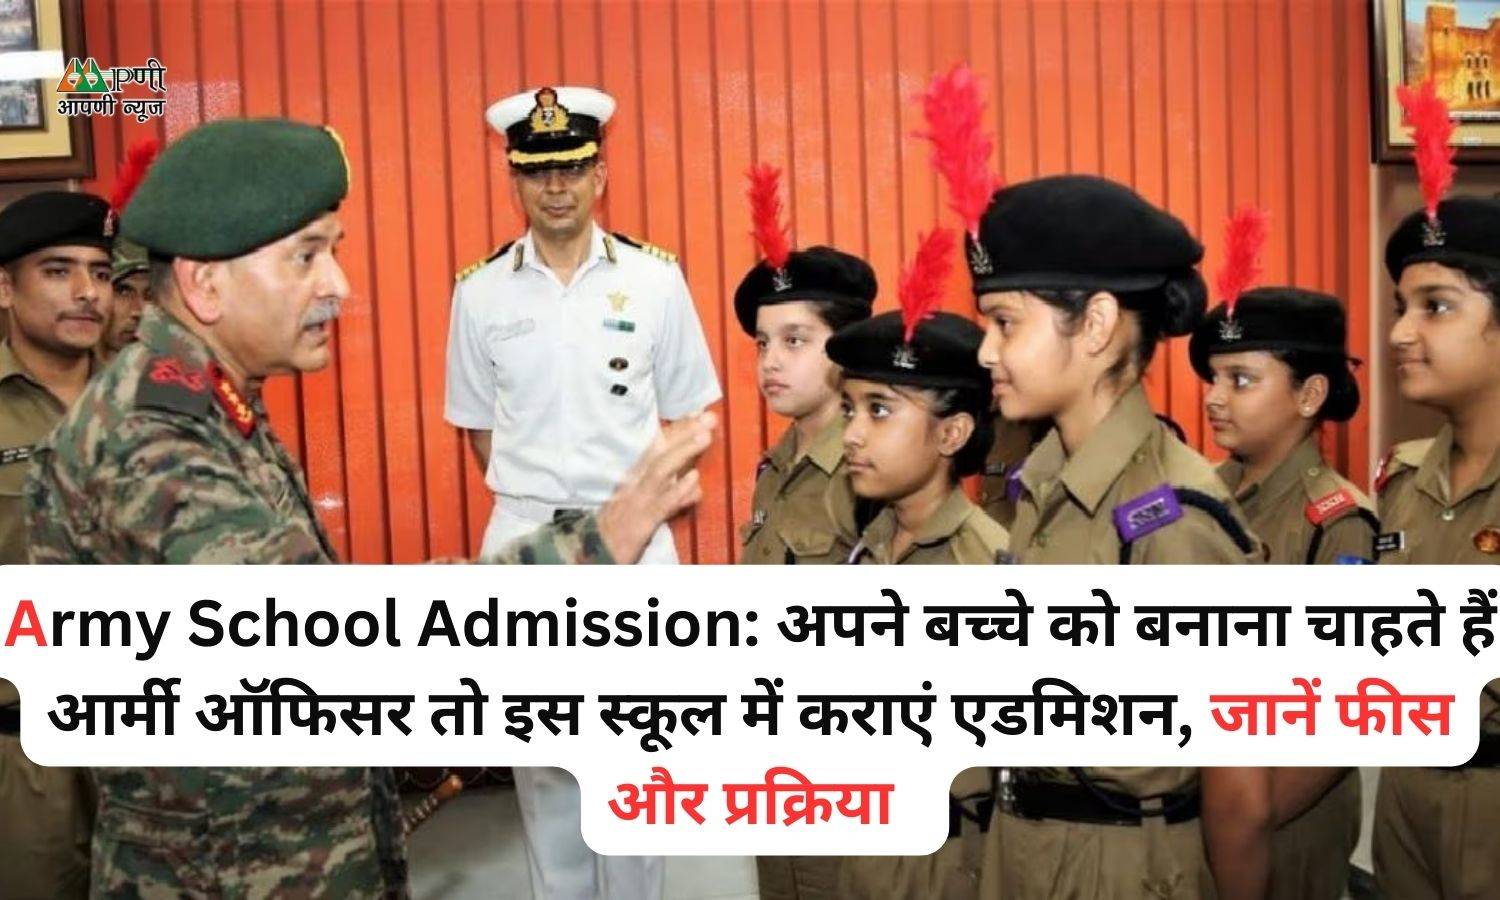 Army School Admission: अपने बच्चे को बनाना चाहते हैं आर्मी ऑफिसर तो इस स्कूल में कराएं एडमिशन, जानें फीस और प्रक्रिया